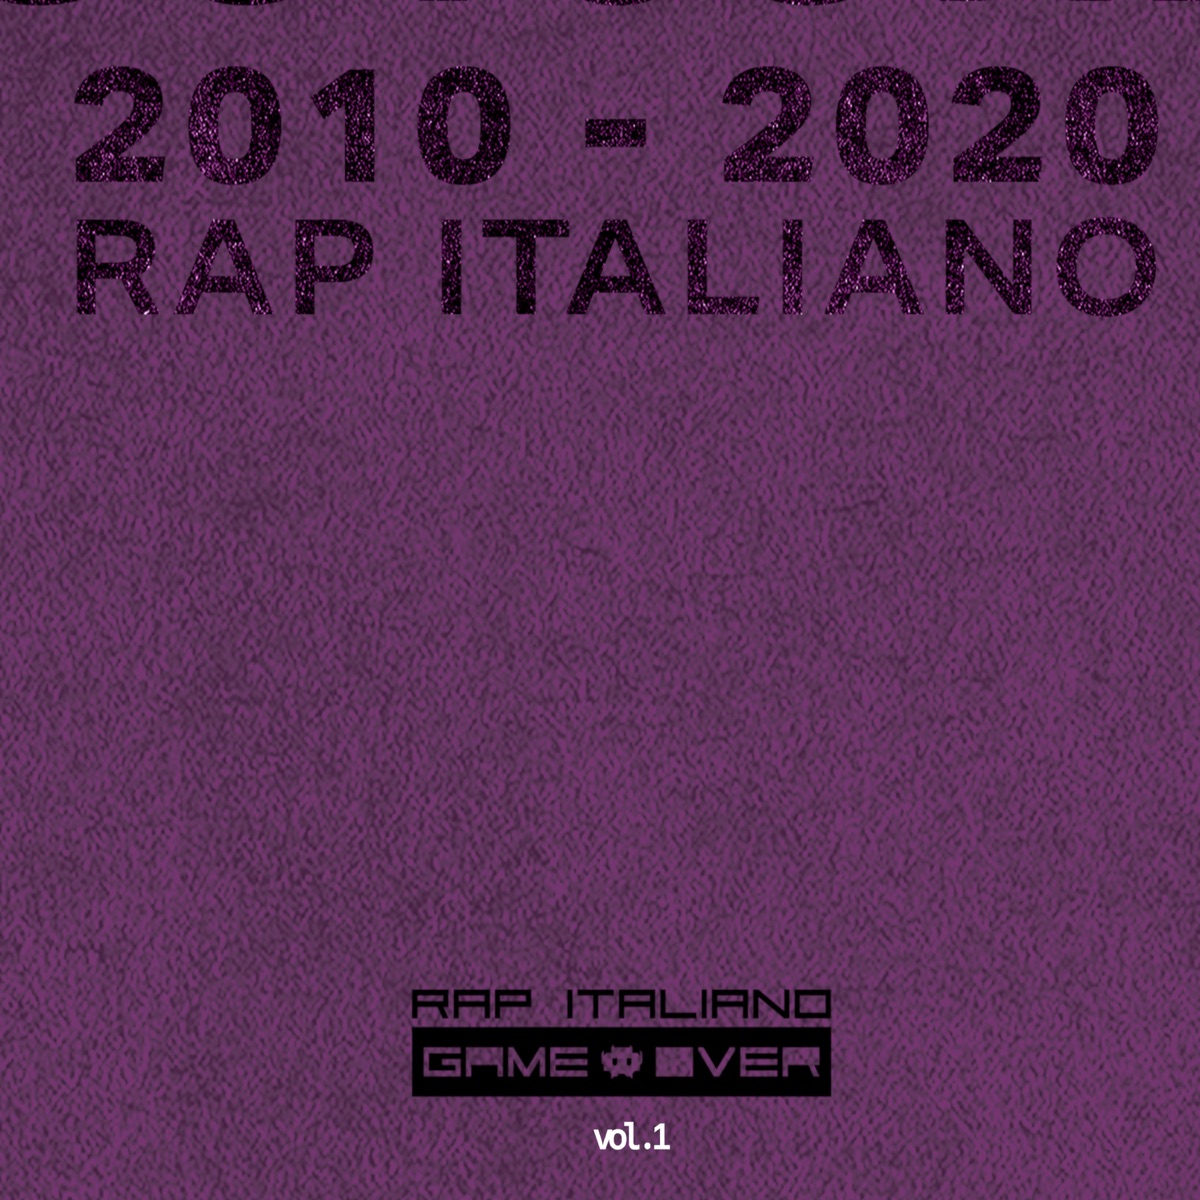 La storia del rap italiano in dieci album